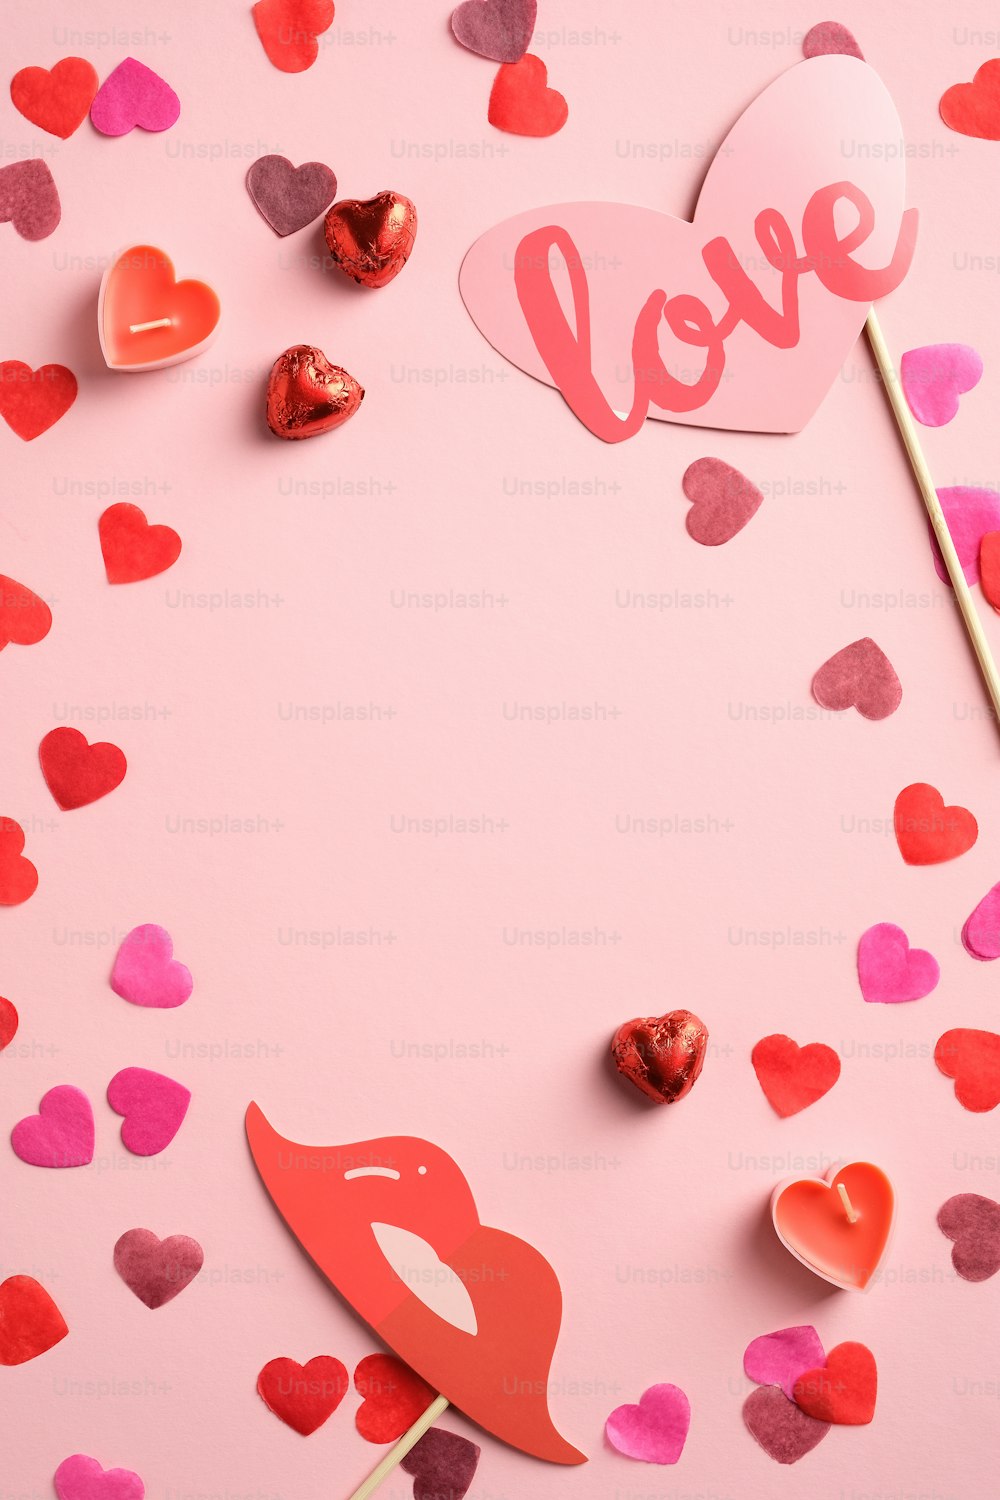 Composizione flat lay di San Valentino con cuori e decorazioni su sfondo rosa. Mockup di banner verticale, design di volantino, modello di poster.